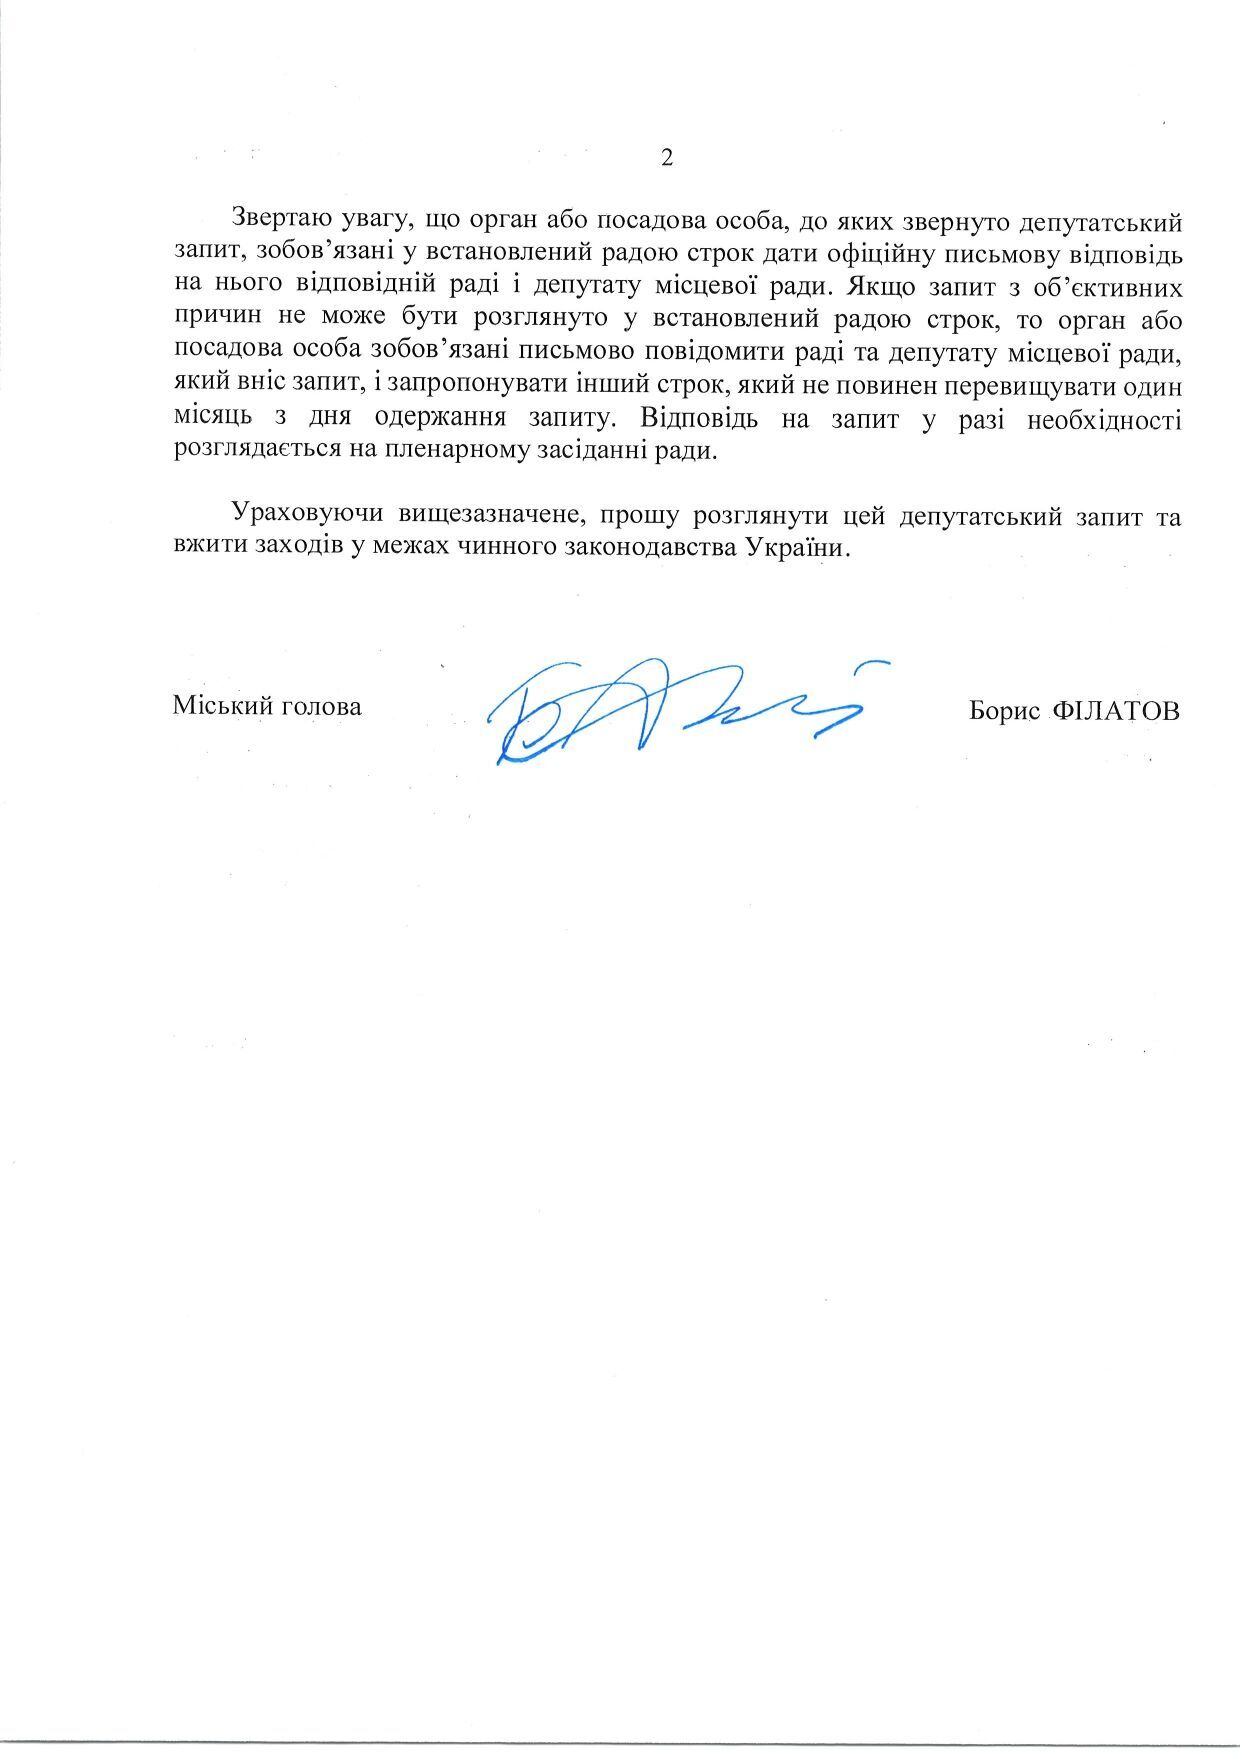 Рыженко, заявивший о попытке захвата больницы Мечникова, не поддержал инициативу о передаче дела правоохранителям